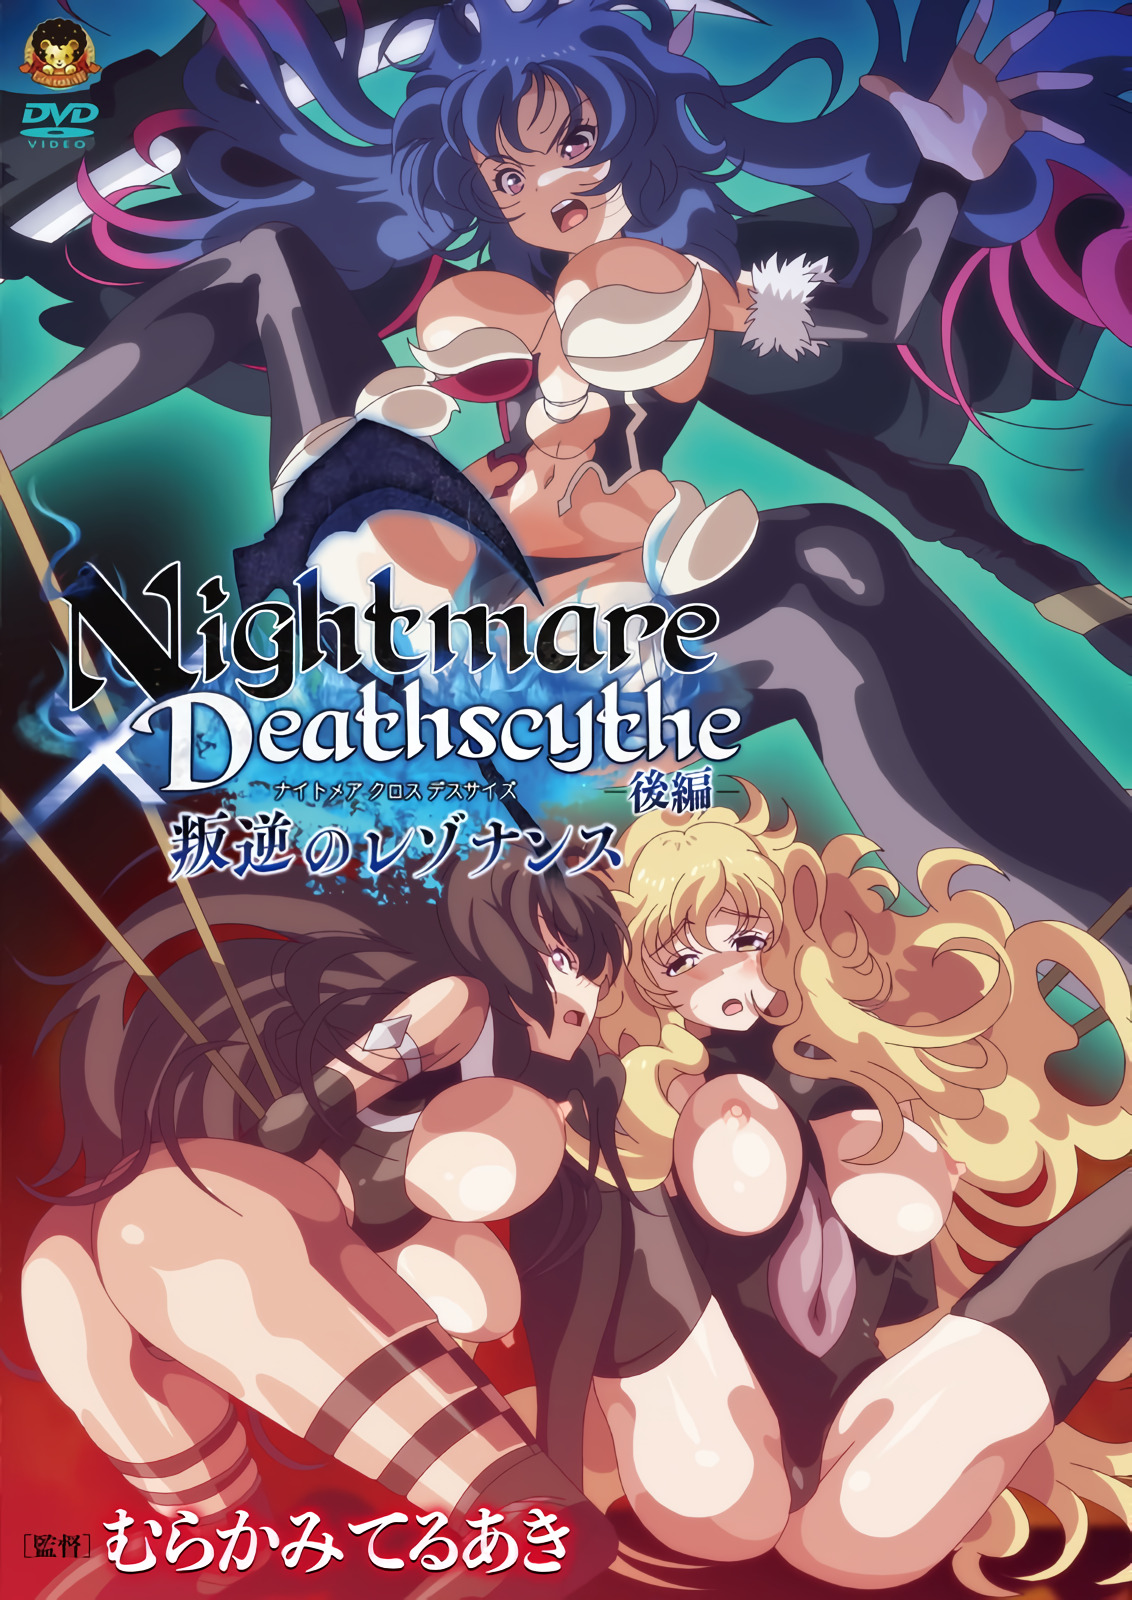 [202312] [Gấu vàng] Nightmare × Deathscythe -Part 2 -Rebellion cộng hưởng